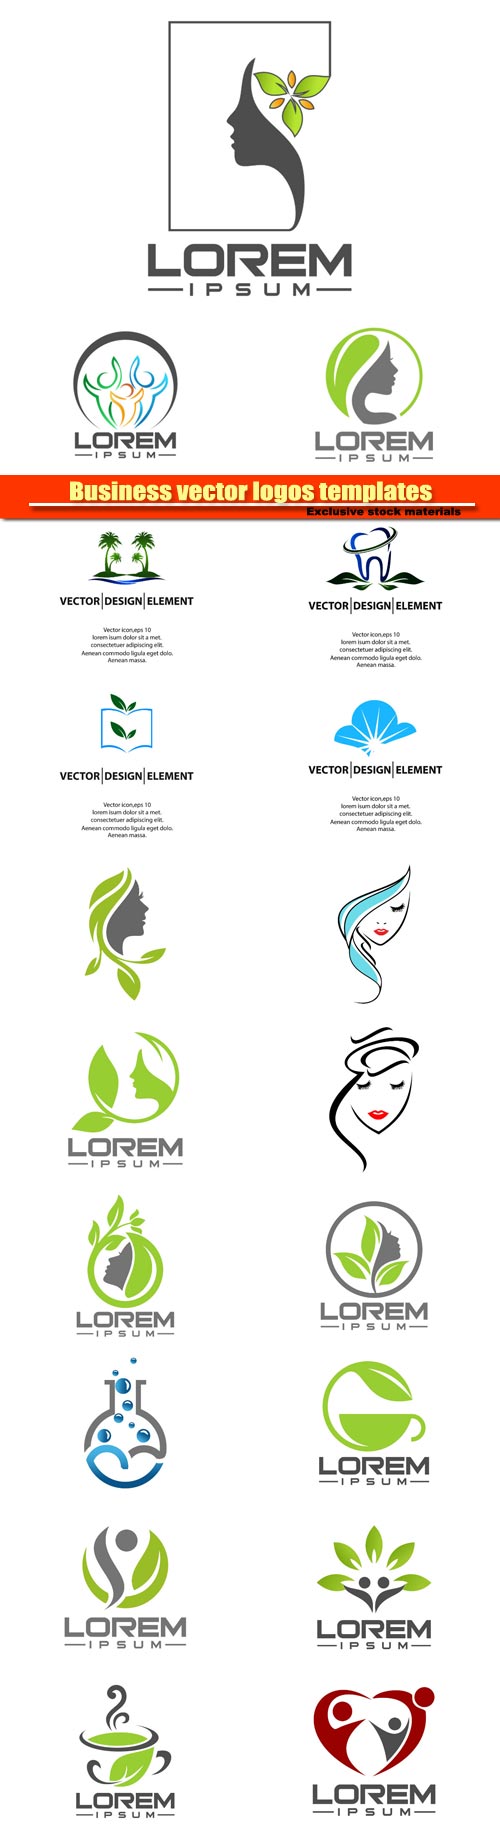 Business vector logos templates 10